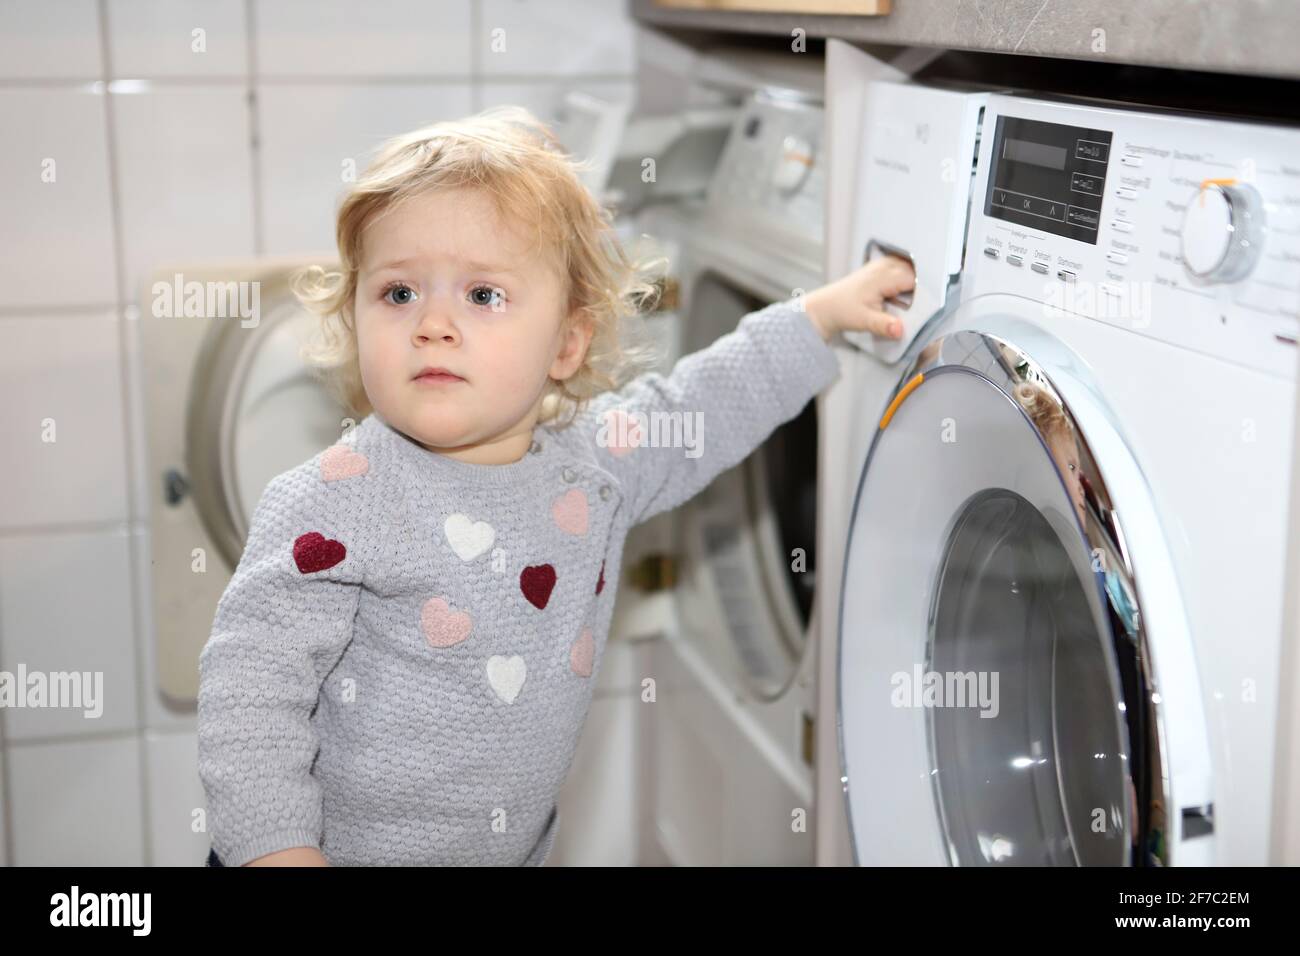 kleines Mädchen hält sich mit einer Hand an einer Waschmaschine fest - little girl holding on to washing machine with one hand Stock Photo